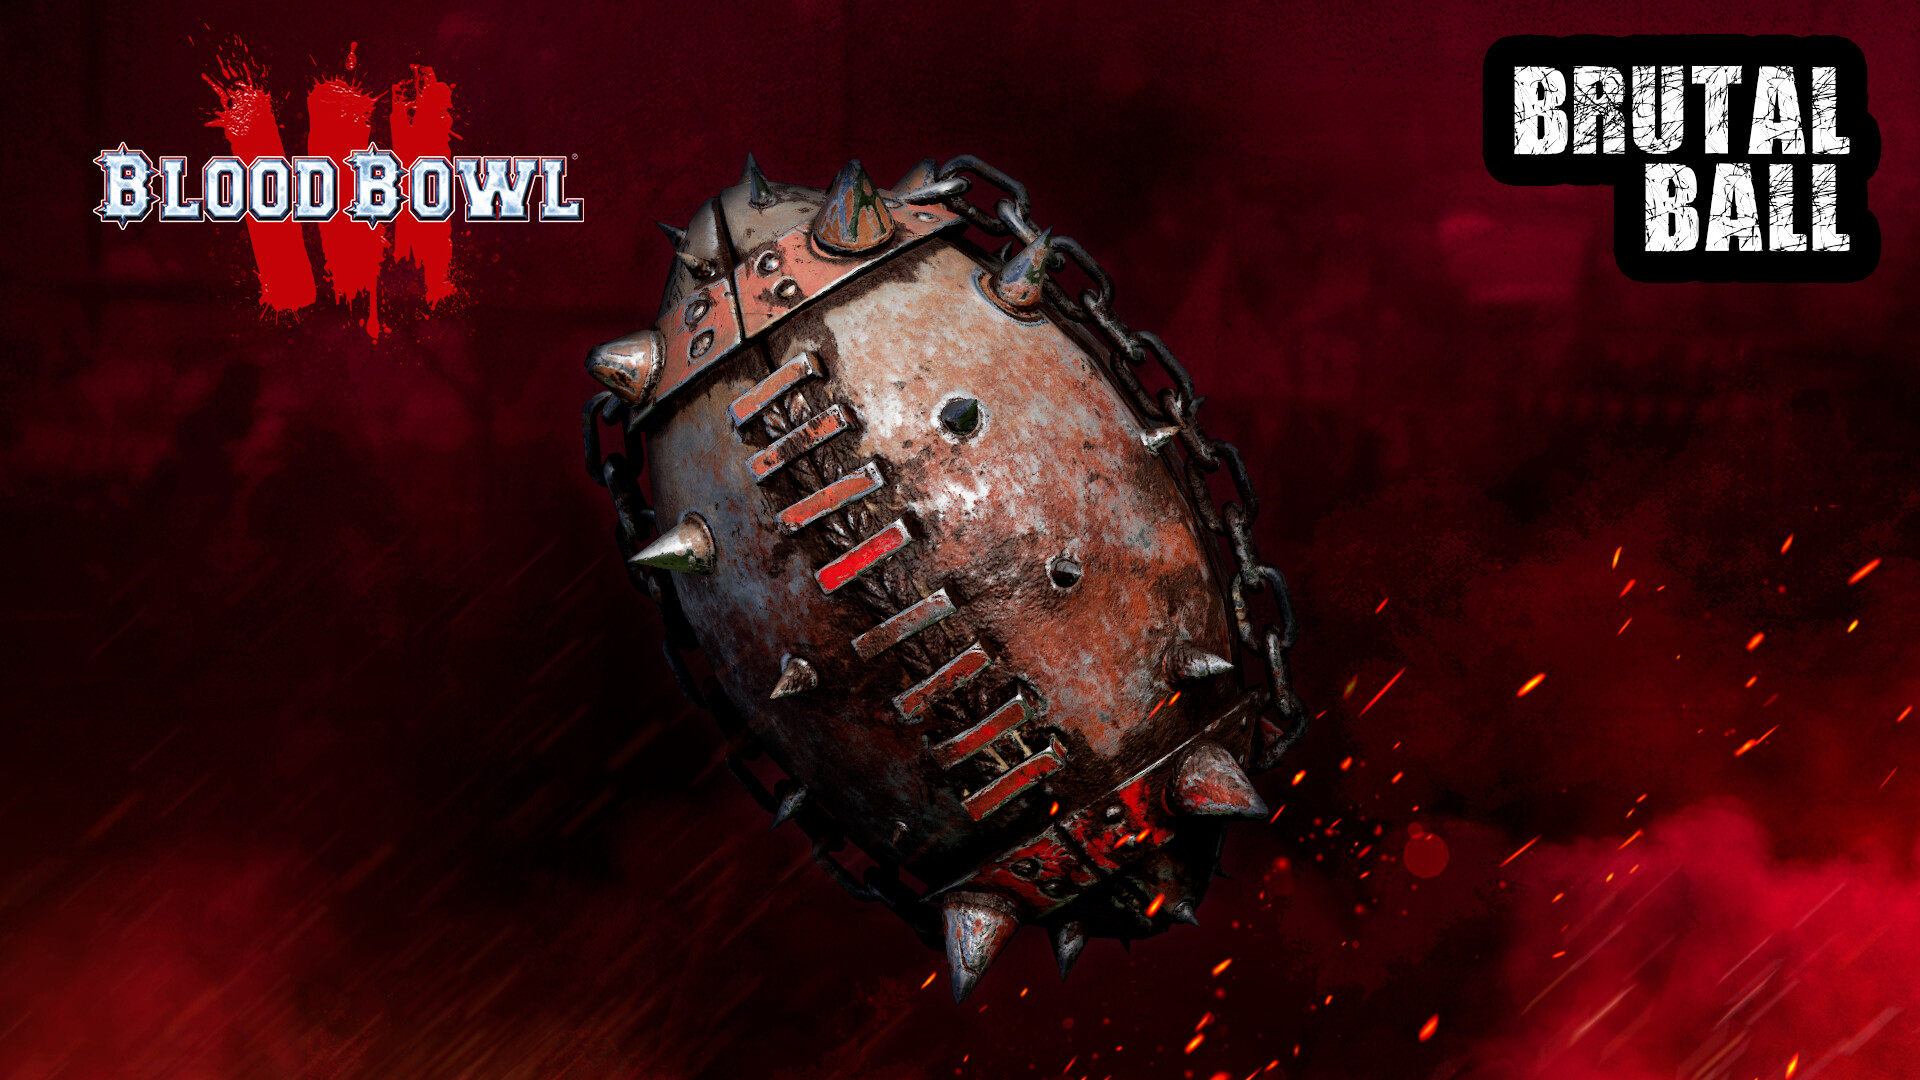 Blood Bowl 3 - Brutal Ball Pack Featured Screenshot #1